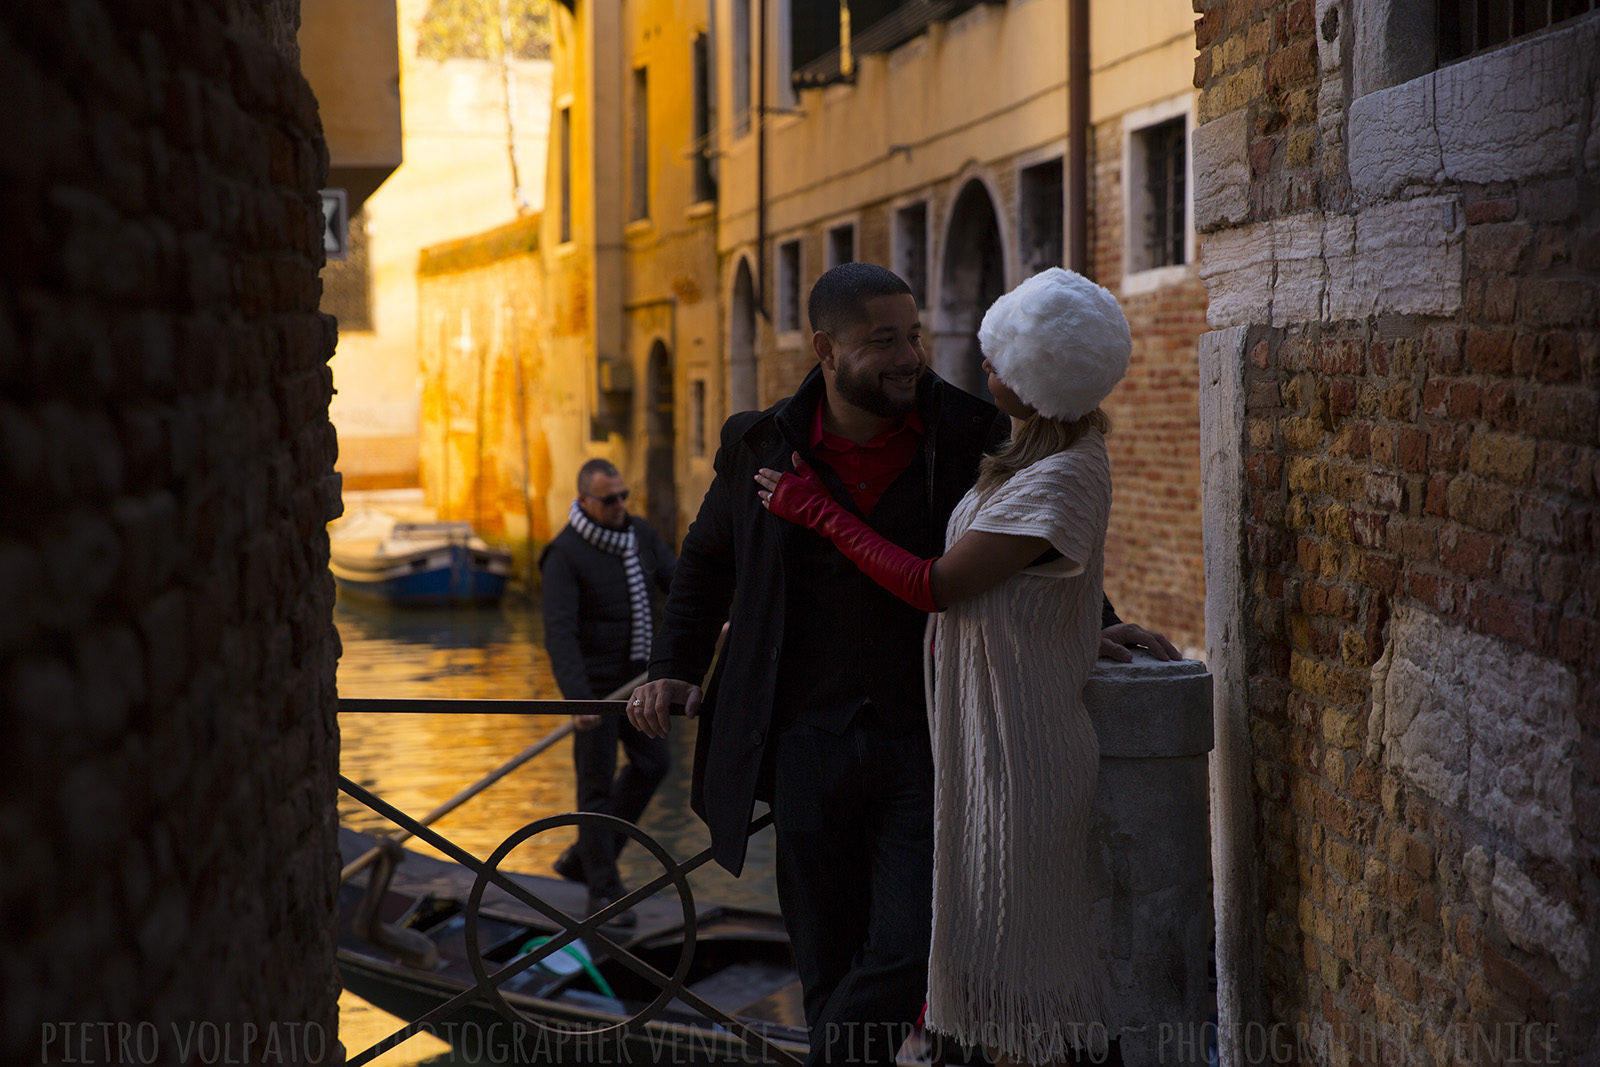 Ingaggiatemi come fotografo per la vostra vacanza romantica a Venezia ~ Foto di una indimenticabile passeggiata e giro in gondola